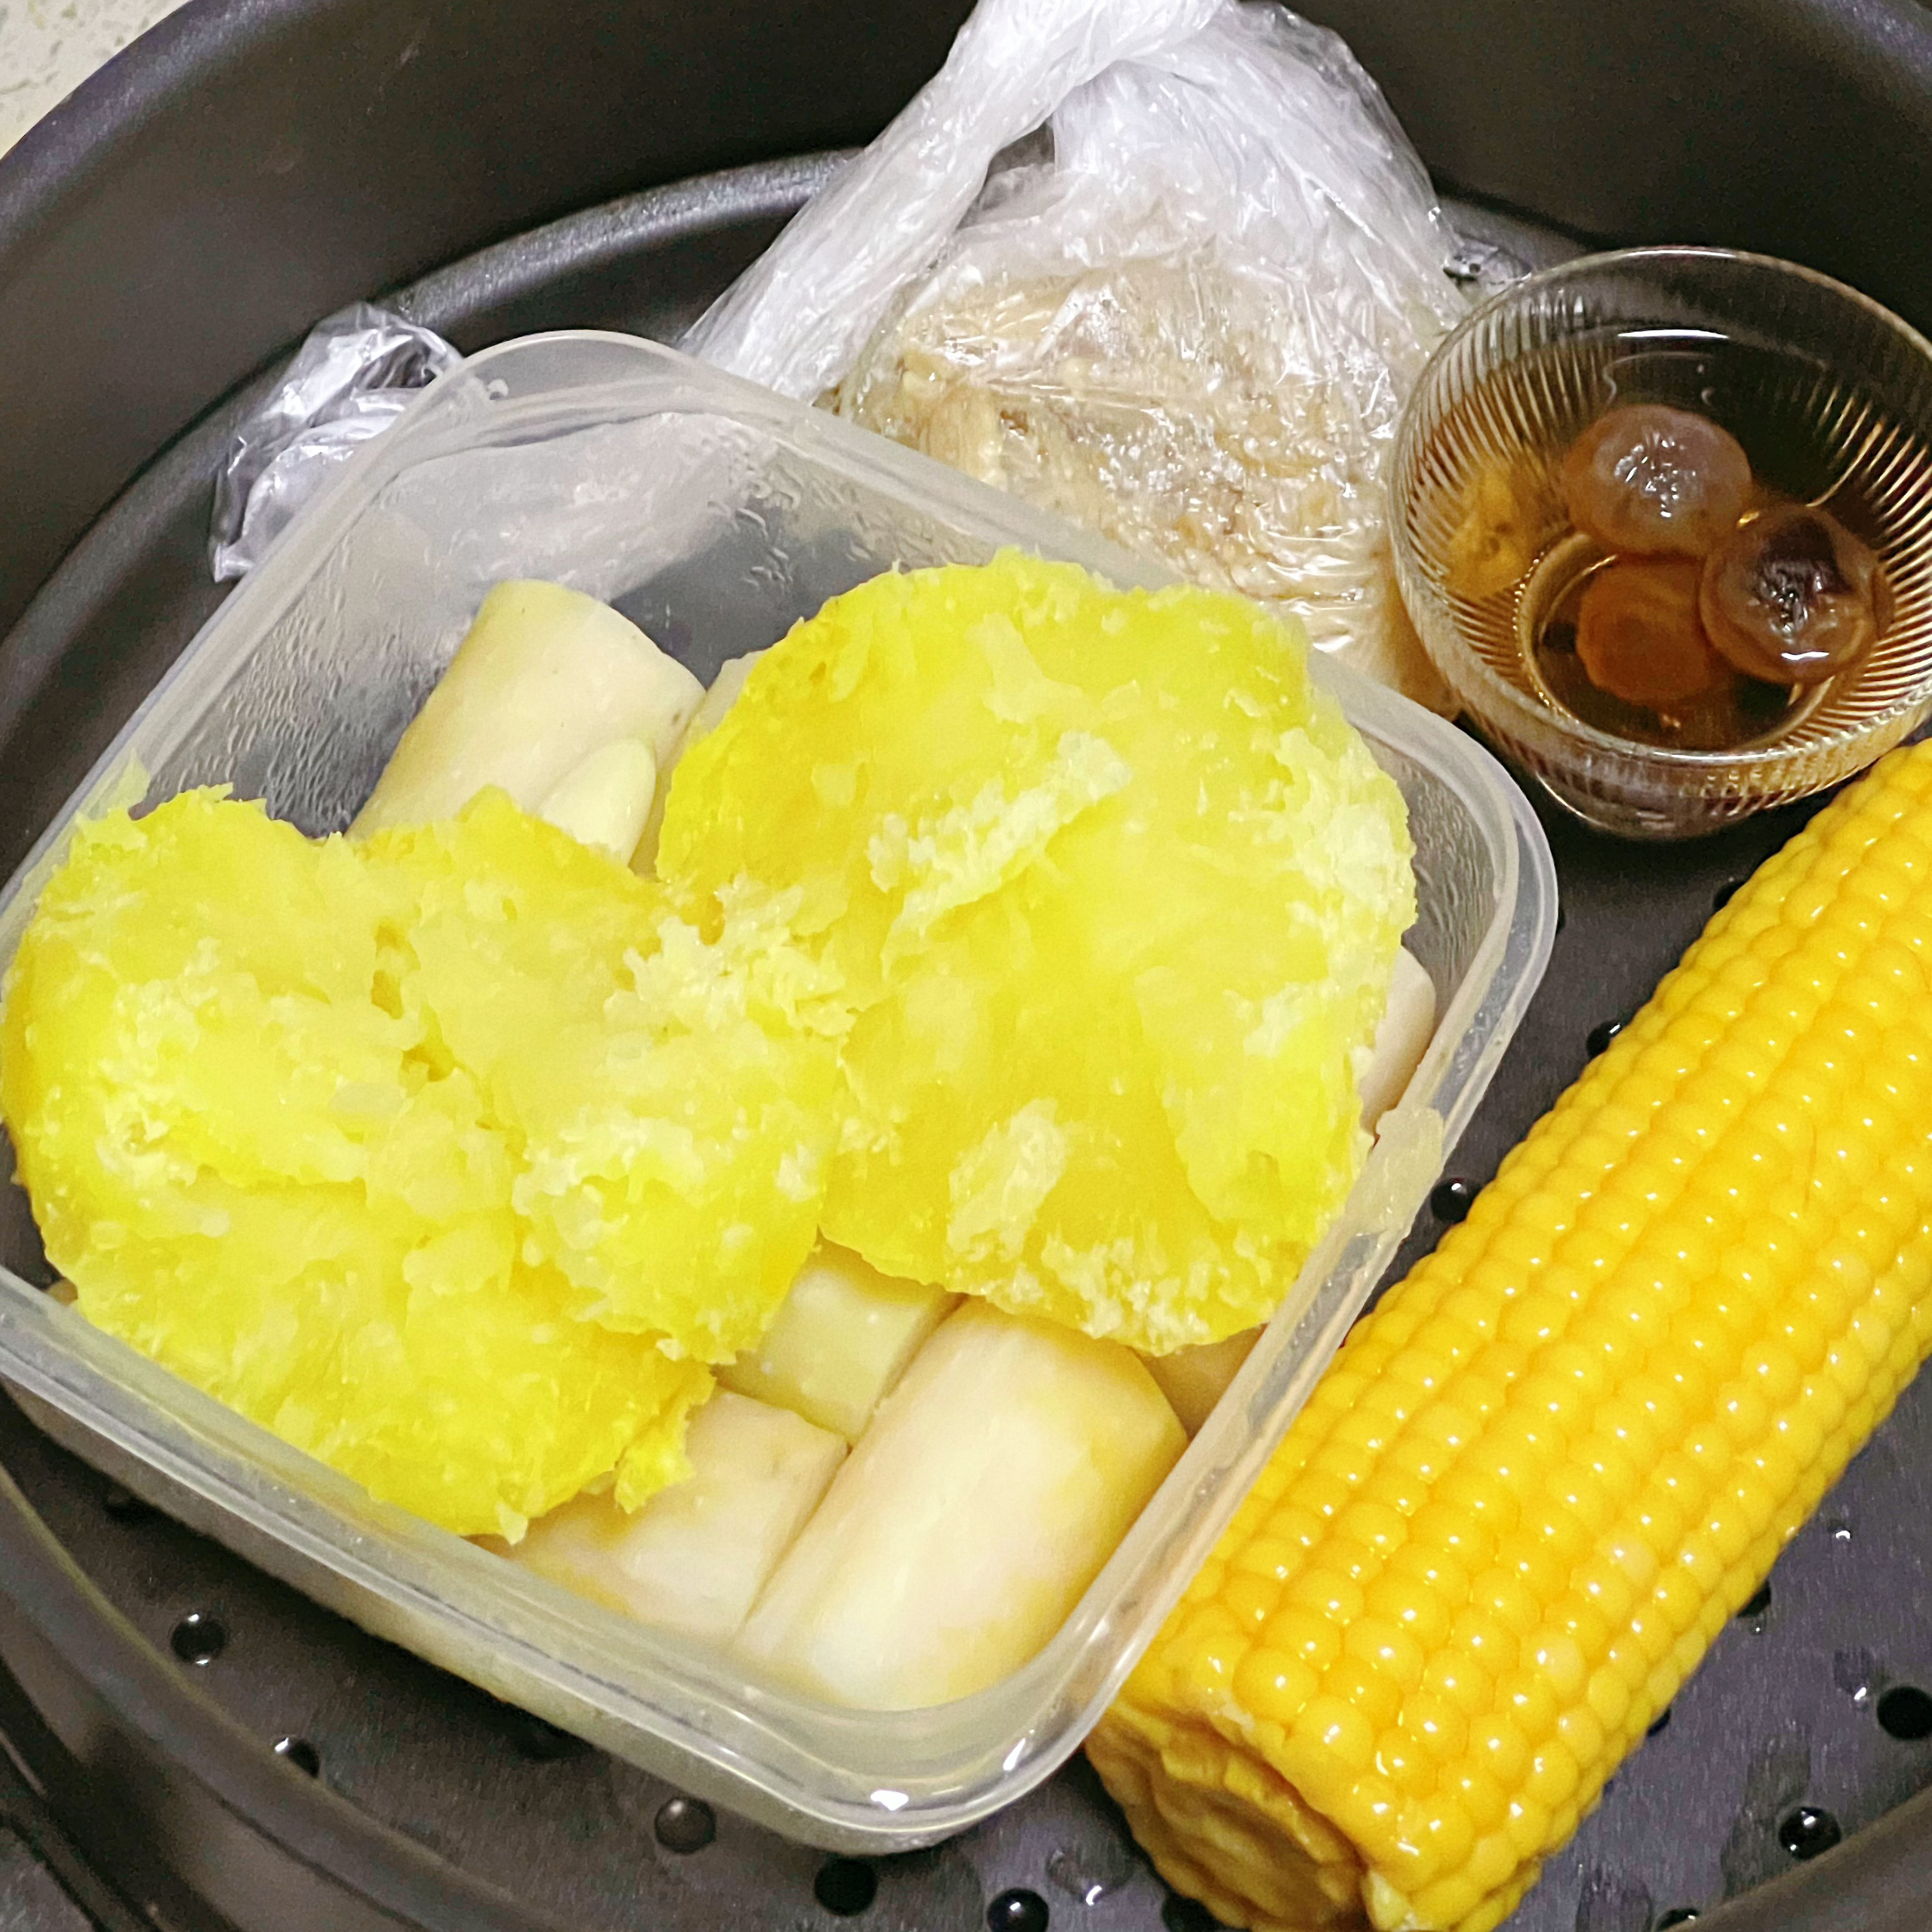 土豆泥黄瓜寿司卷🔥清爽又低卡‼️超多口味